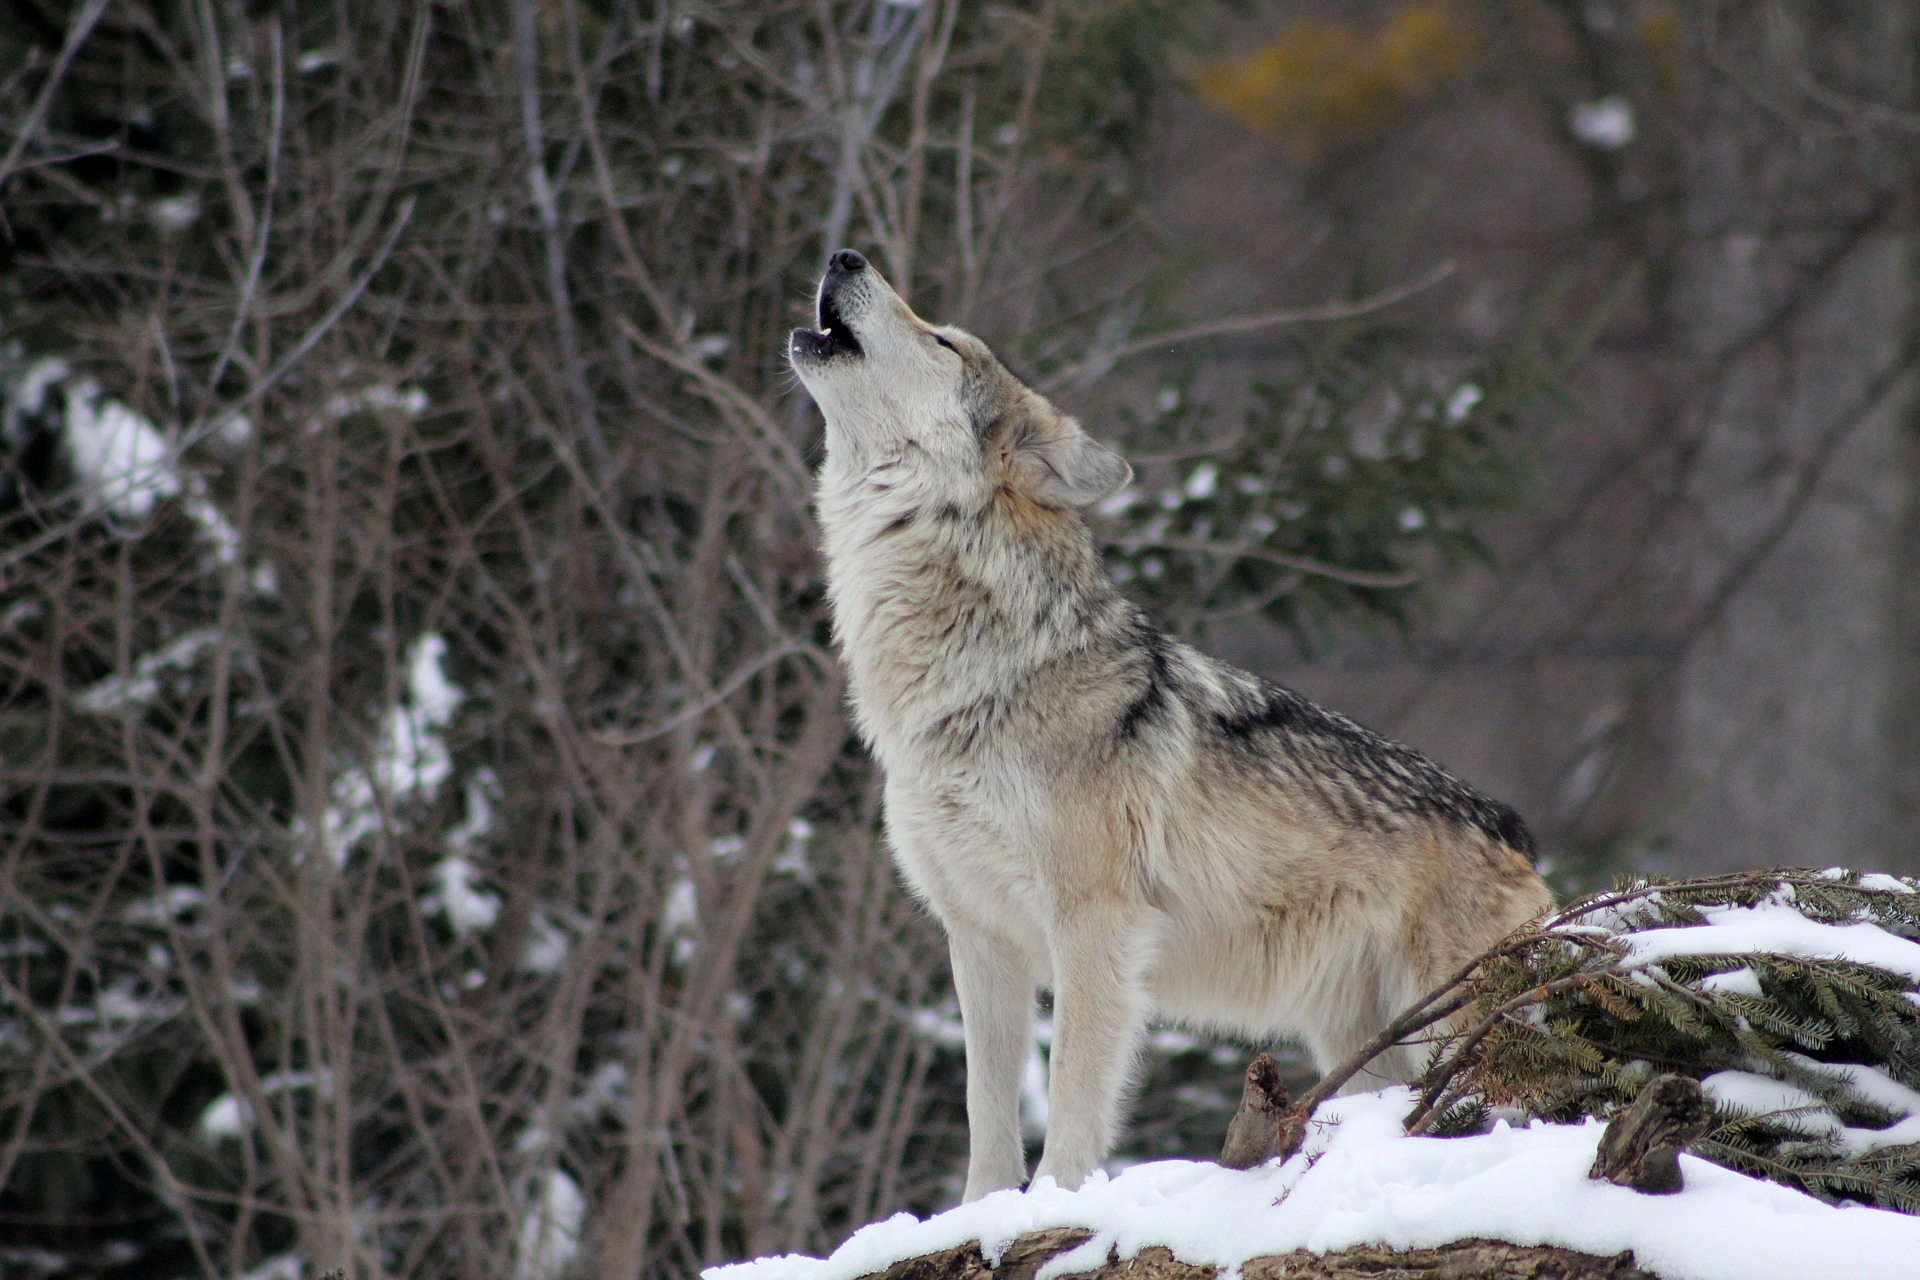 第３回実況者人狼に学ぶグレコン 元人狼廃人の人狼解説wikiっぽいブログ